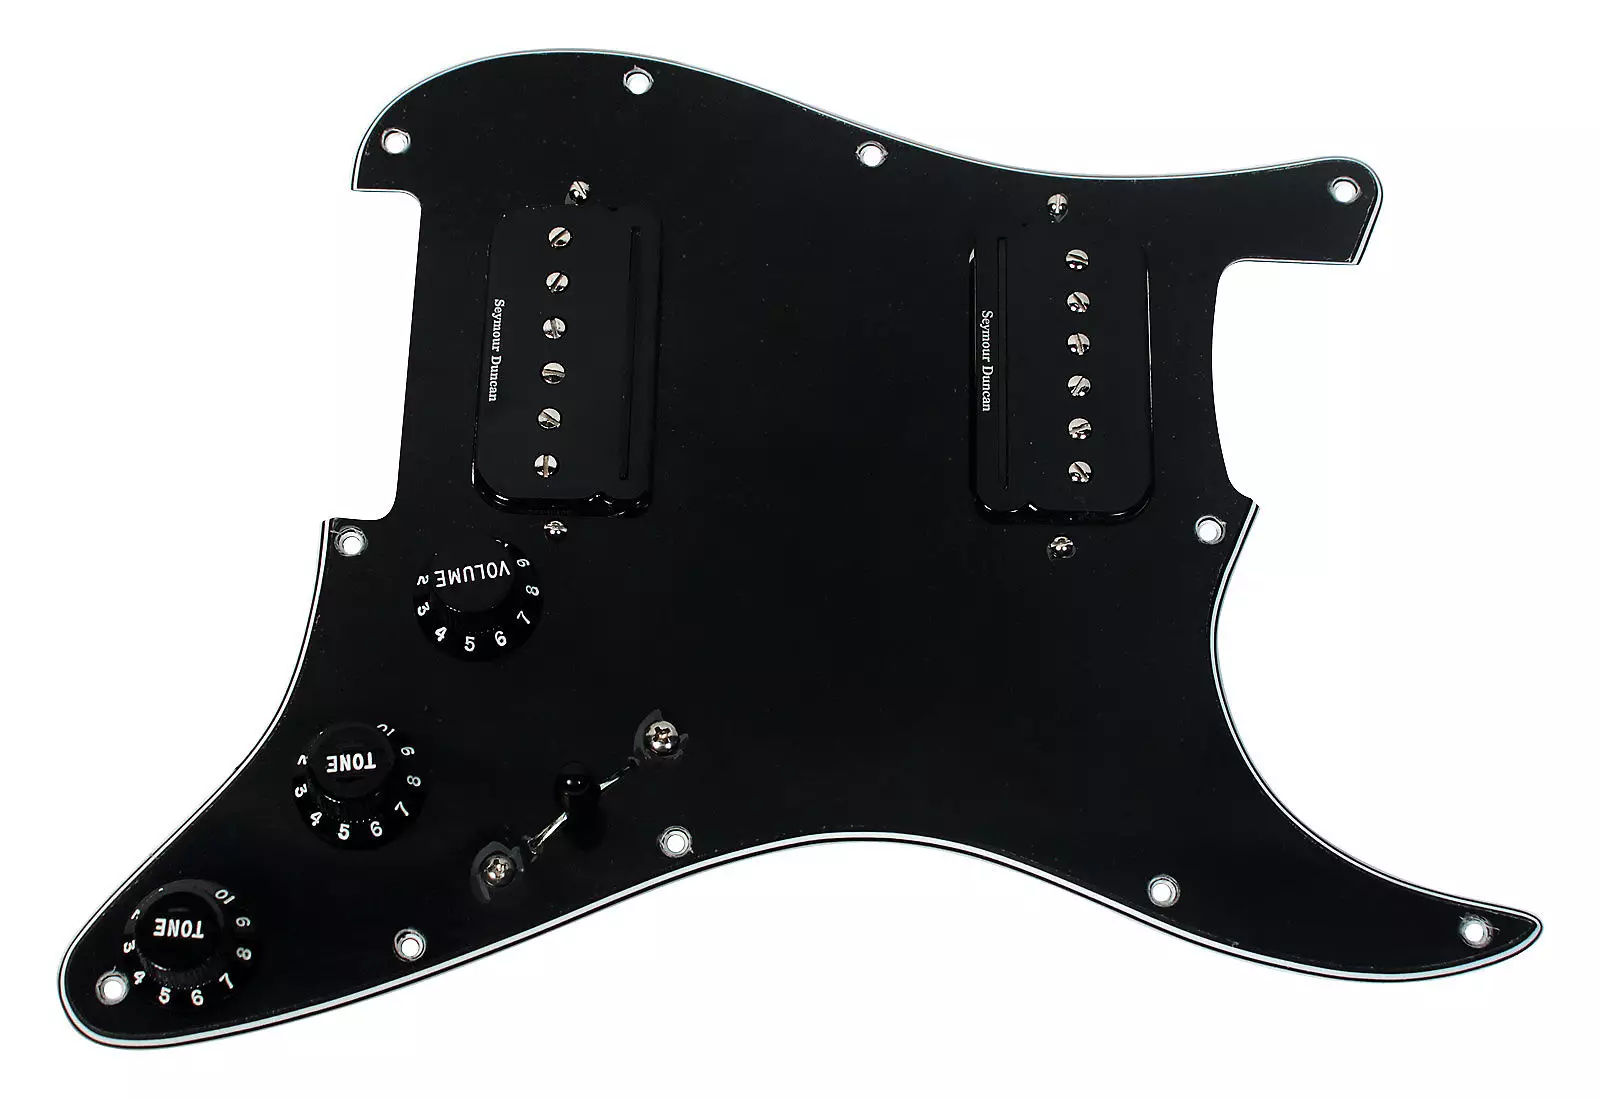 PICGARD: Para la guitarra Stratocaster y acústica, para la pantalla de TV. ¿Qué es y de qué plástico hacen paneles para la guitarra eléctrica? 25429_4